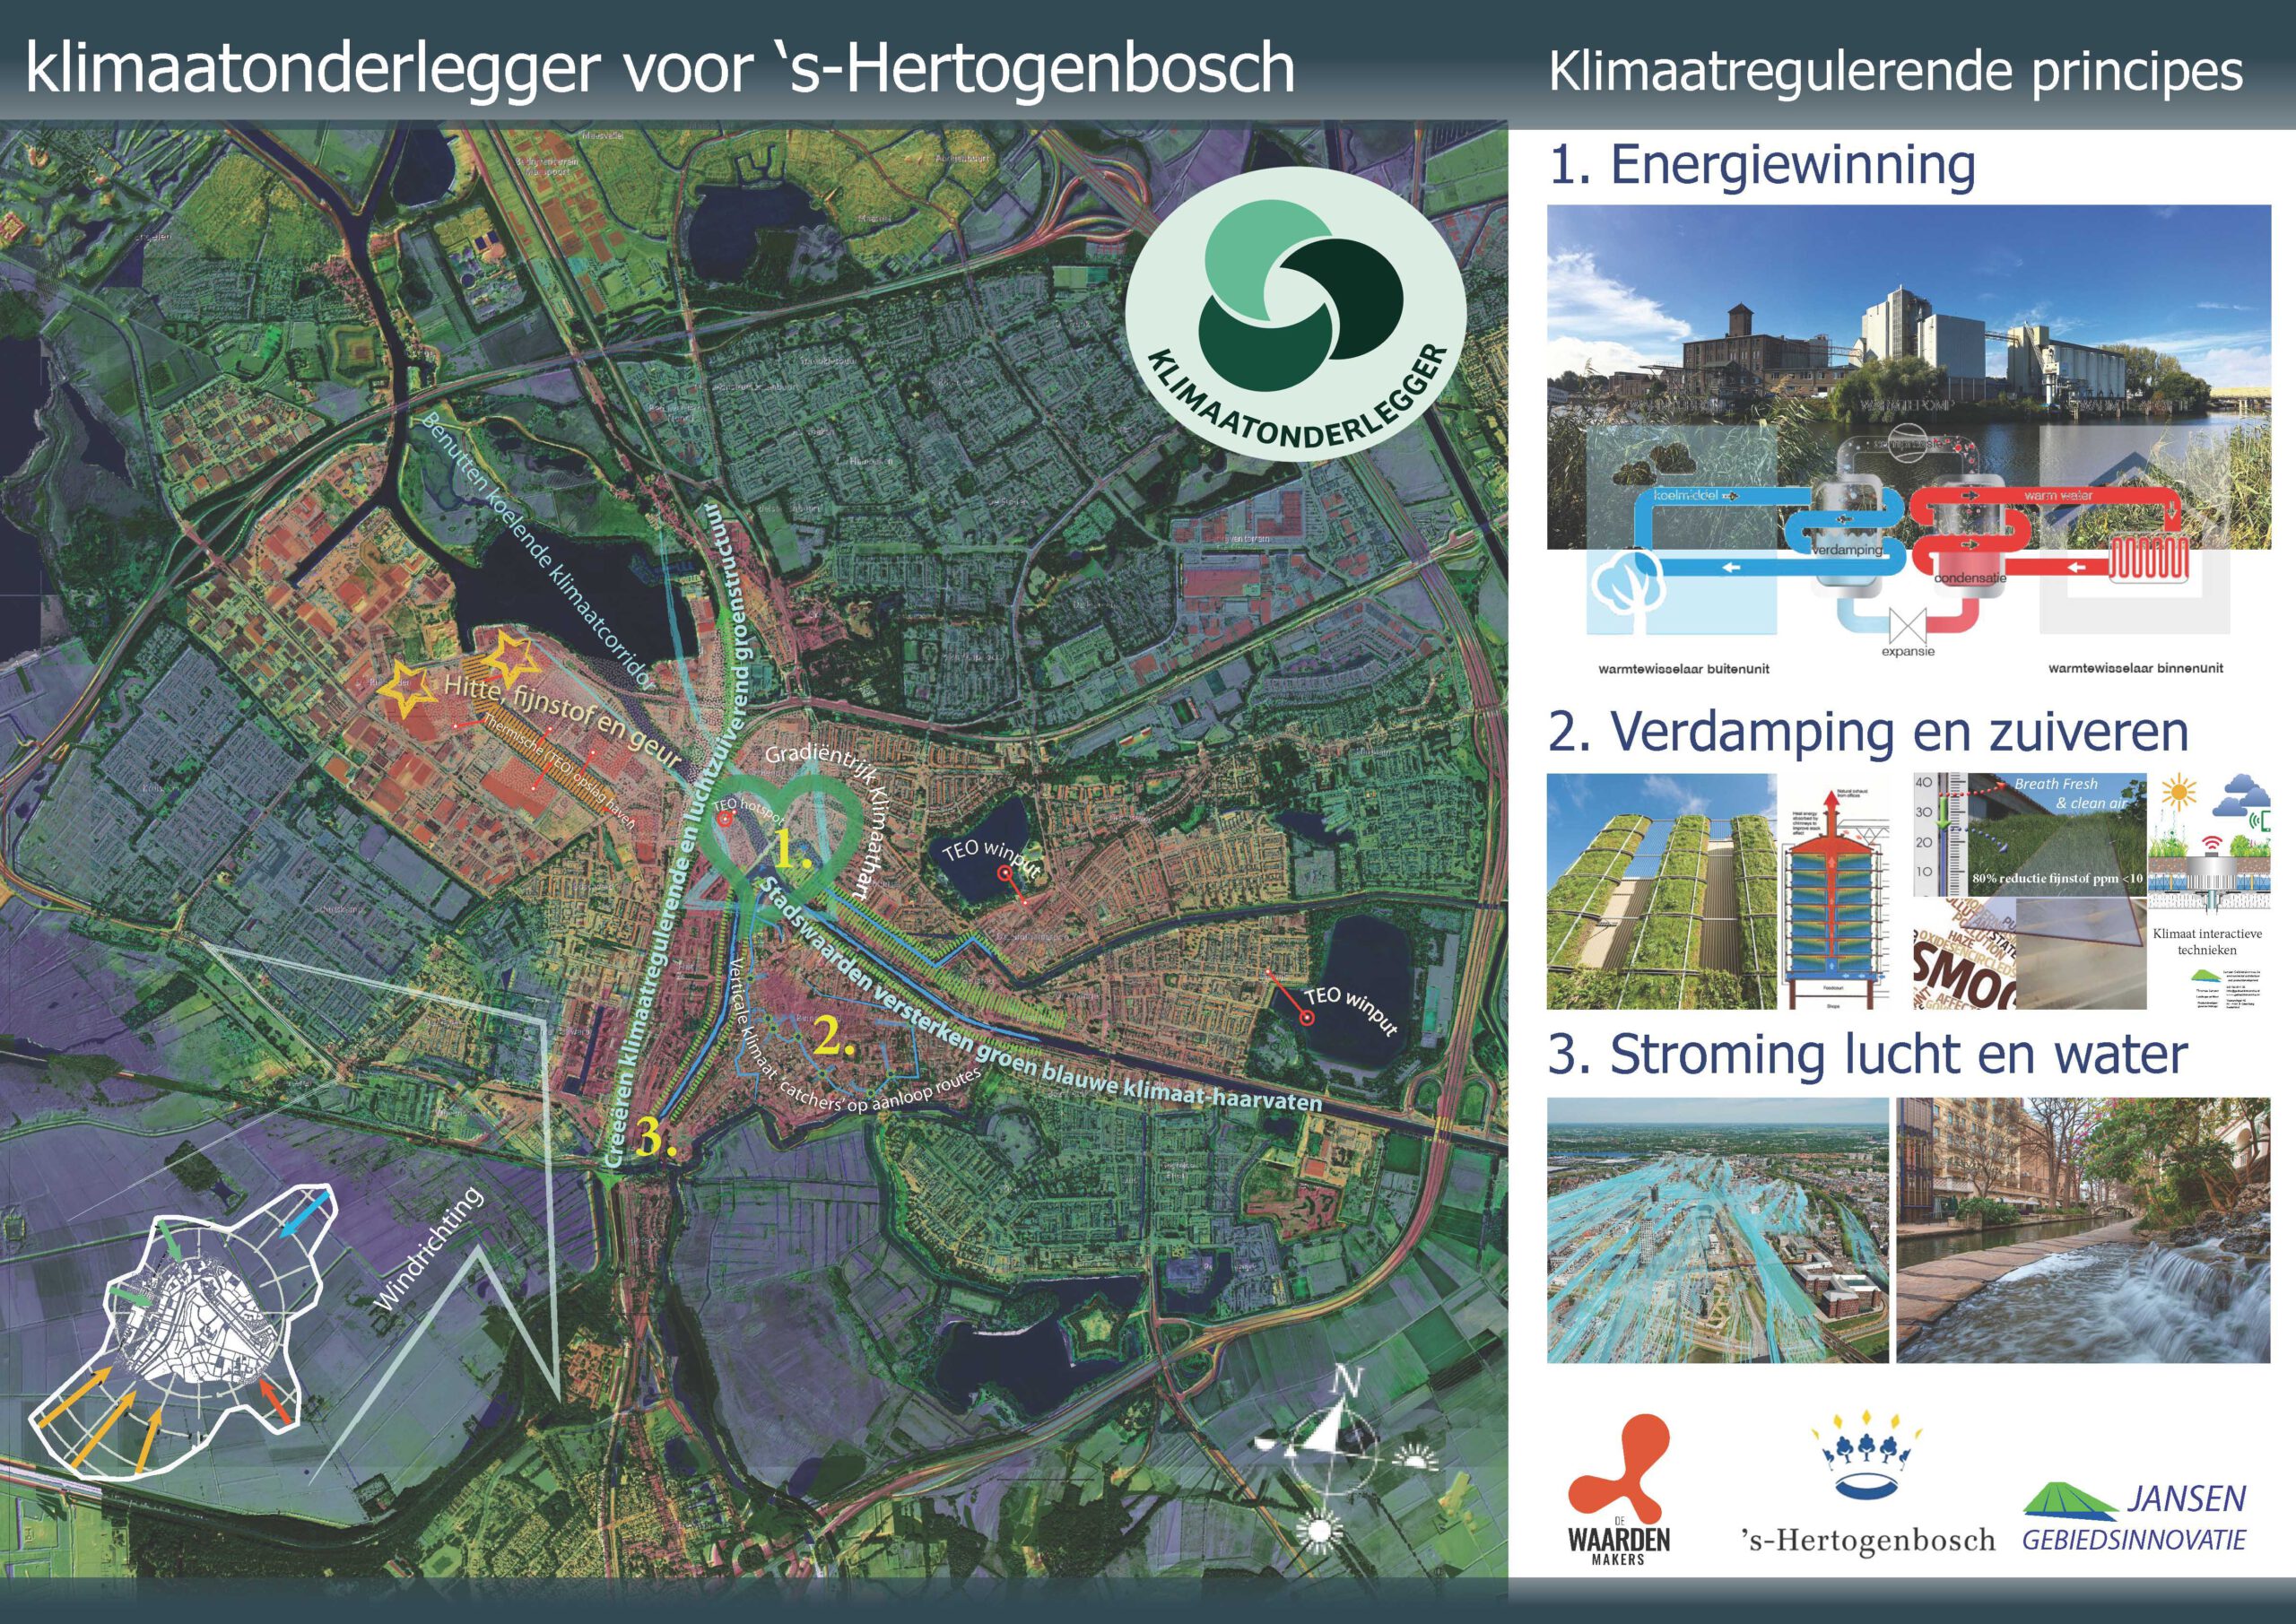 Klimaatonderlegger 's-Hertogenbosch